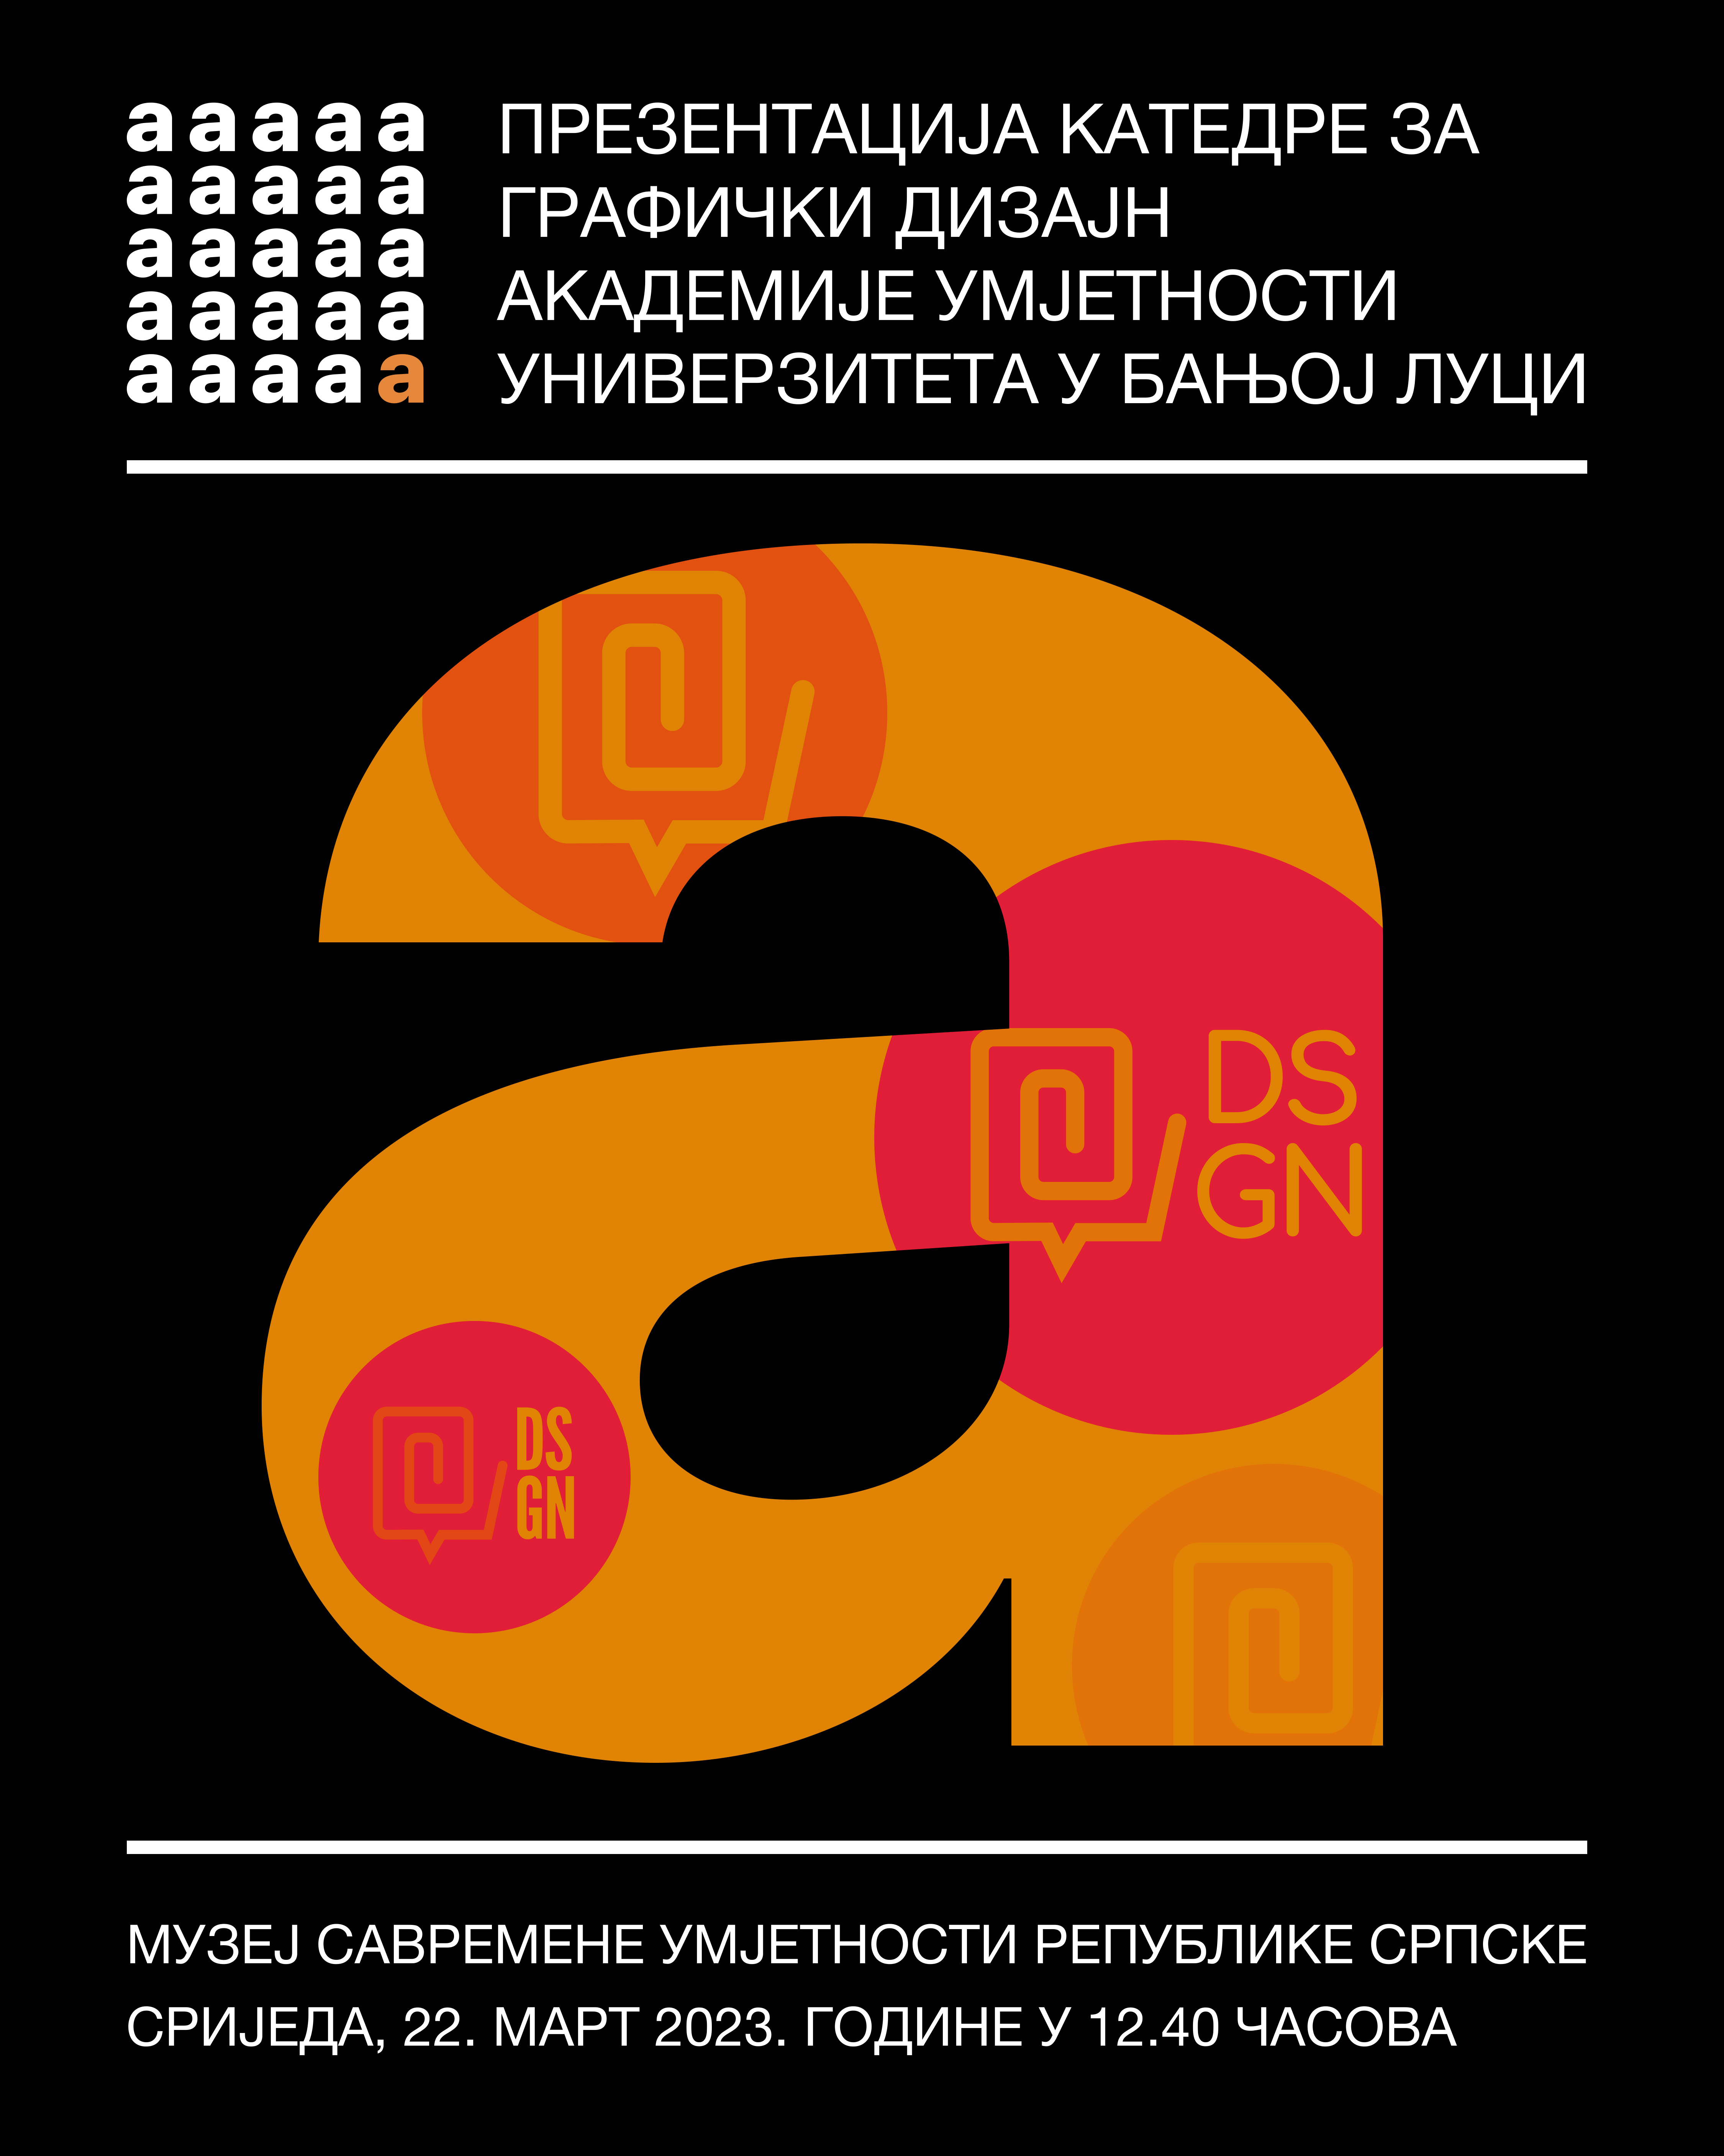 Презентација катедре за графички дизајн Академије умјетности Универзитета у Бањој Луци